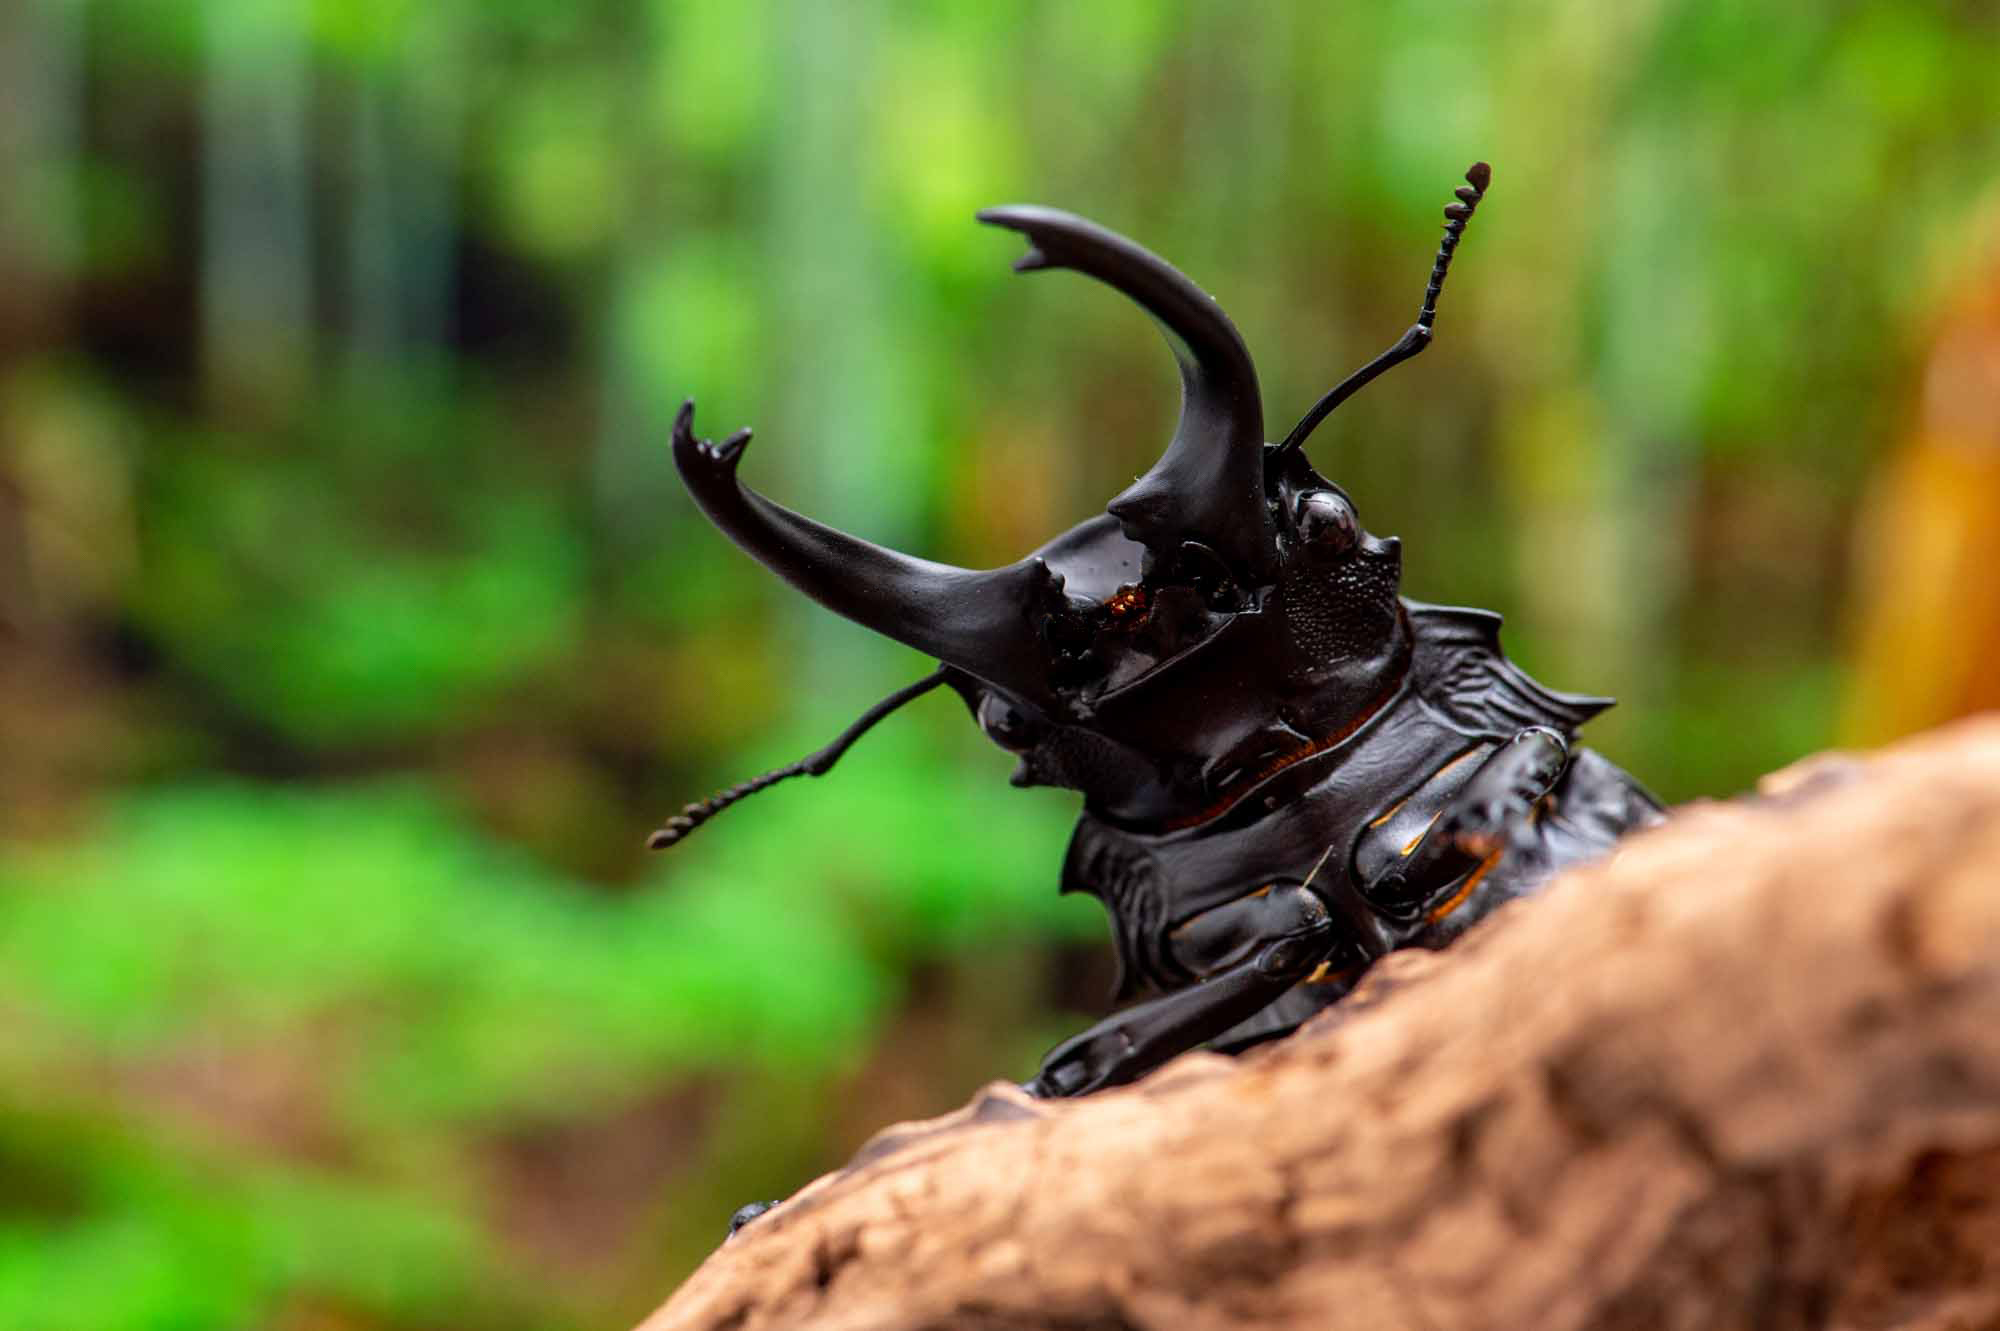 ダールマンツヤクワガタ 虫の写真と生態なら昆虫写真図鑑「ムシミル」